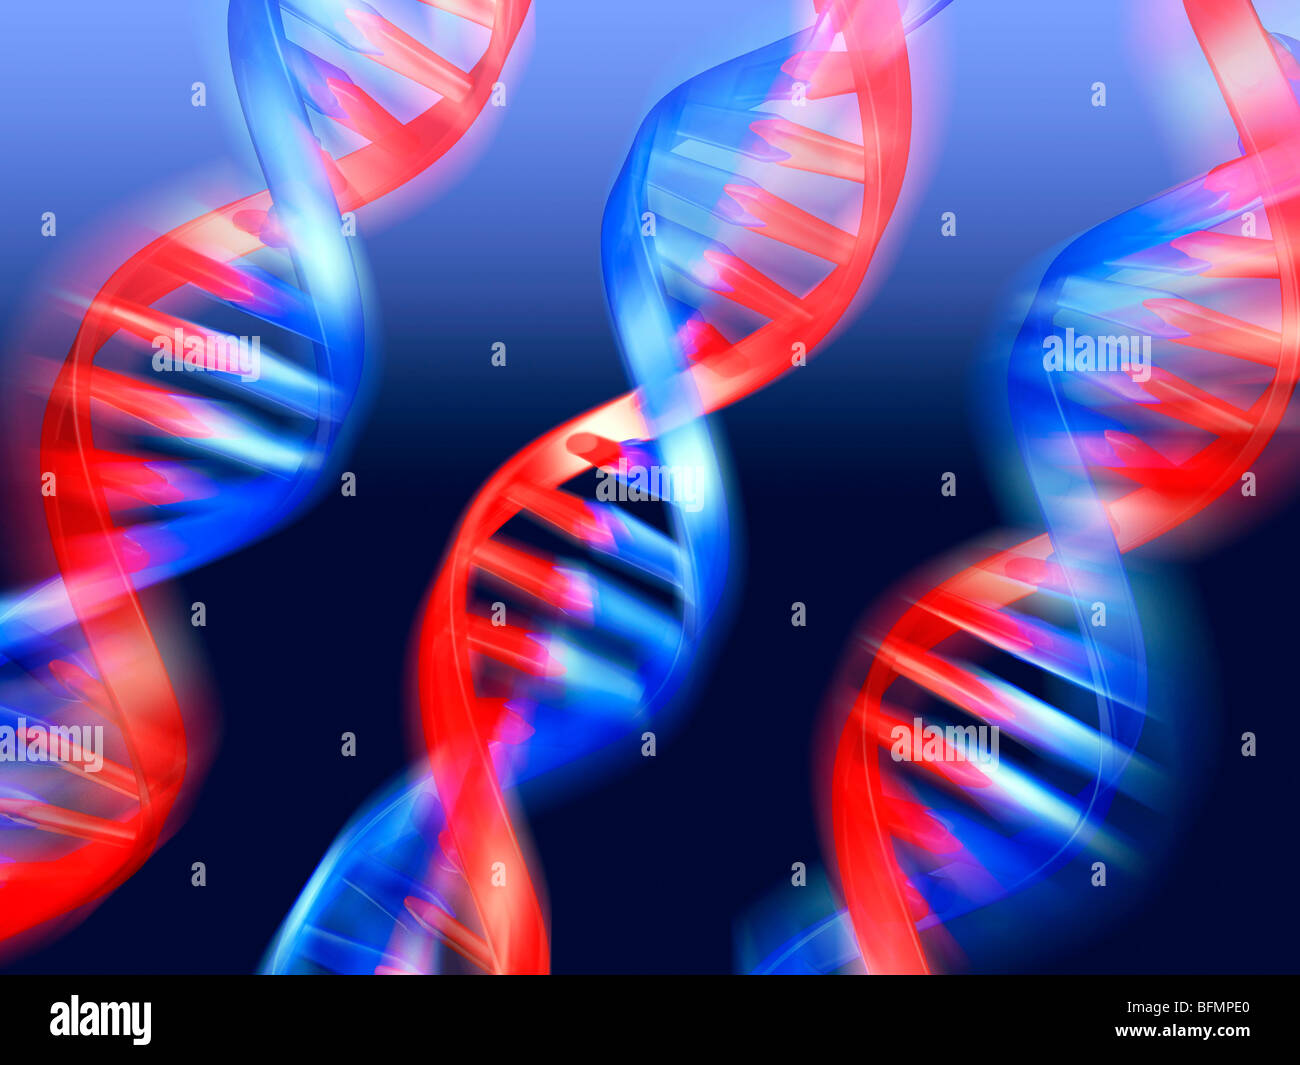 DNA molecules, artwork Stock Photo